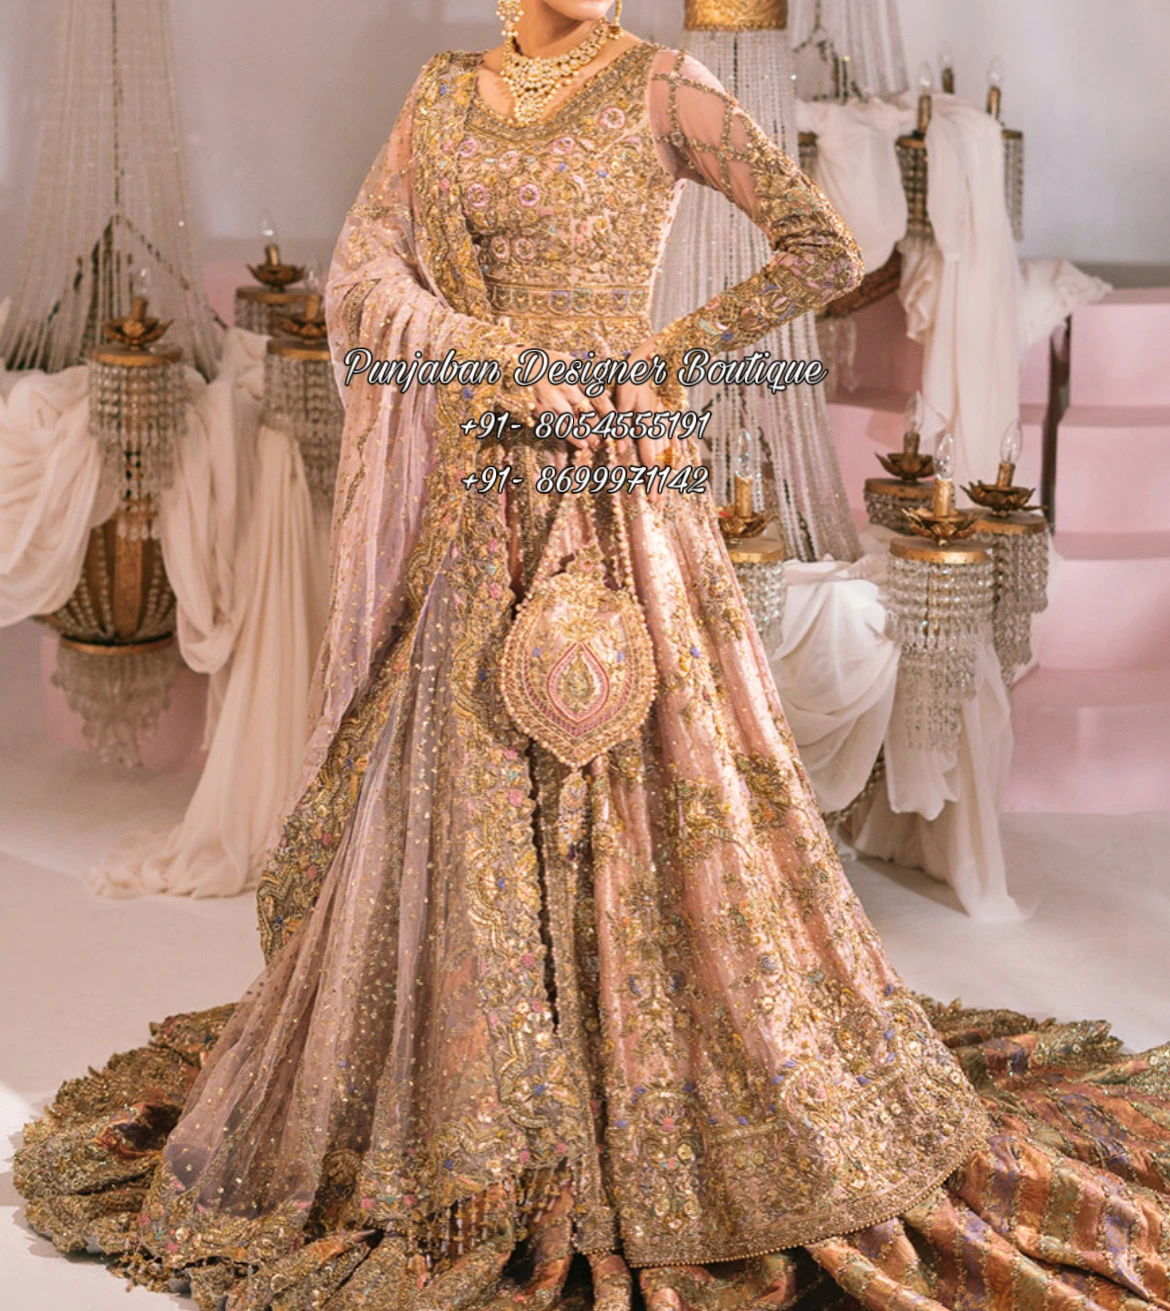 Designer Gowns For Weddings | Punjaban Designer Boutique